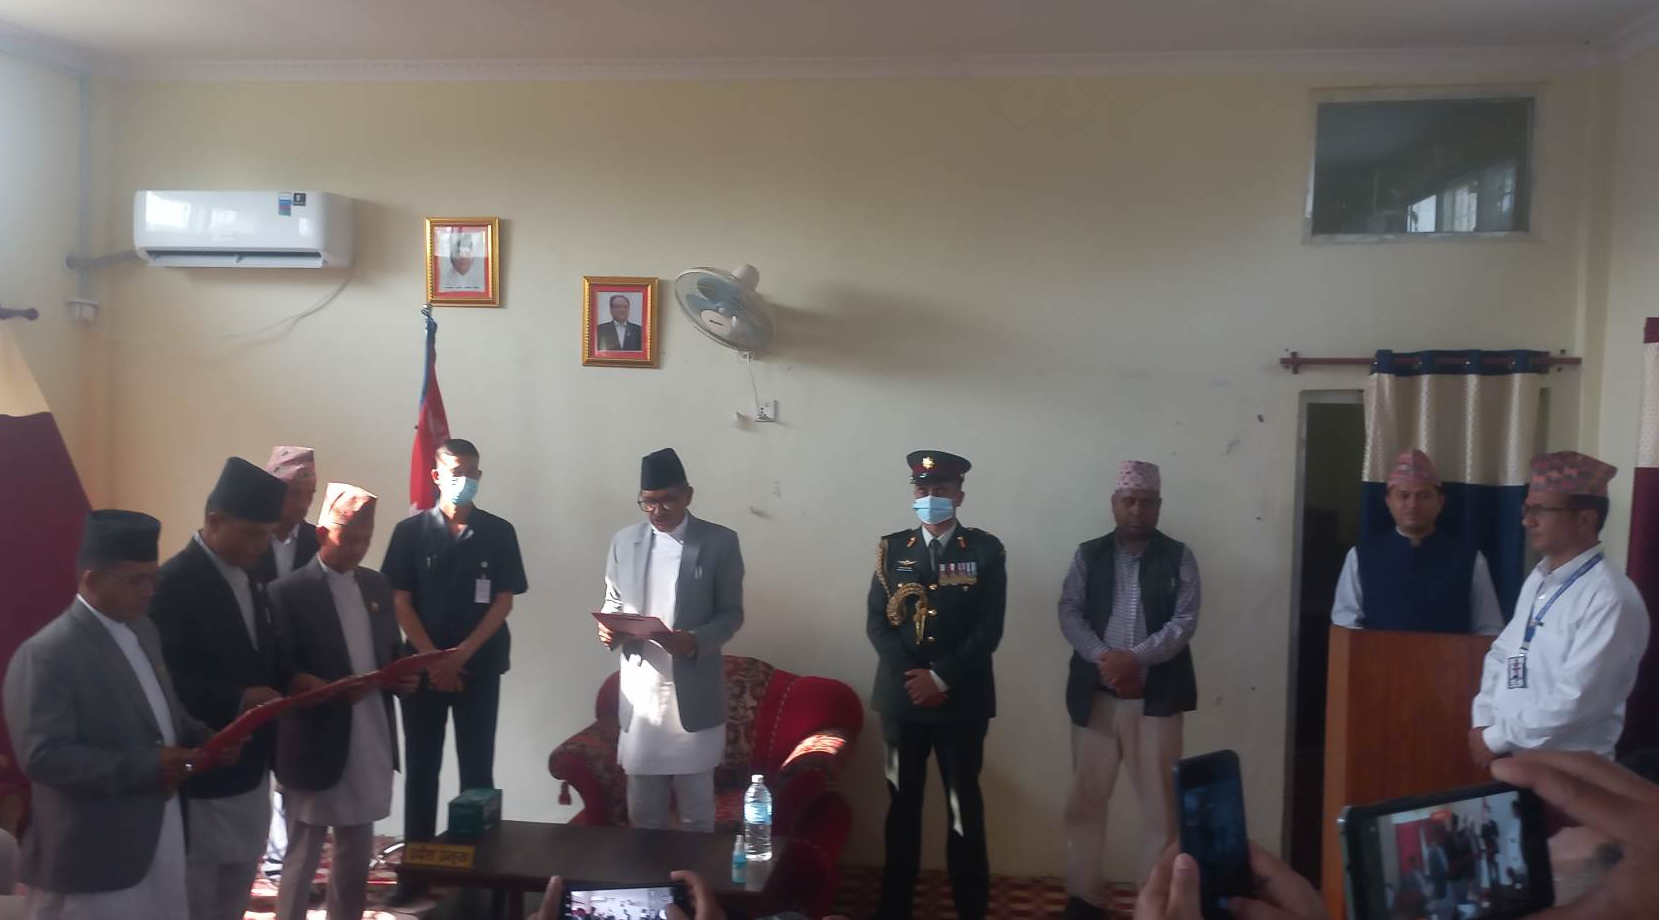 सुदूरपश्चिम प्रदेश सरकार विस्तार, नवनियुक्त मन्त्रीहरूले लिए शपथ